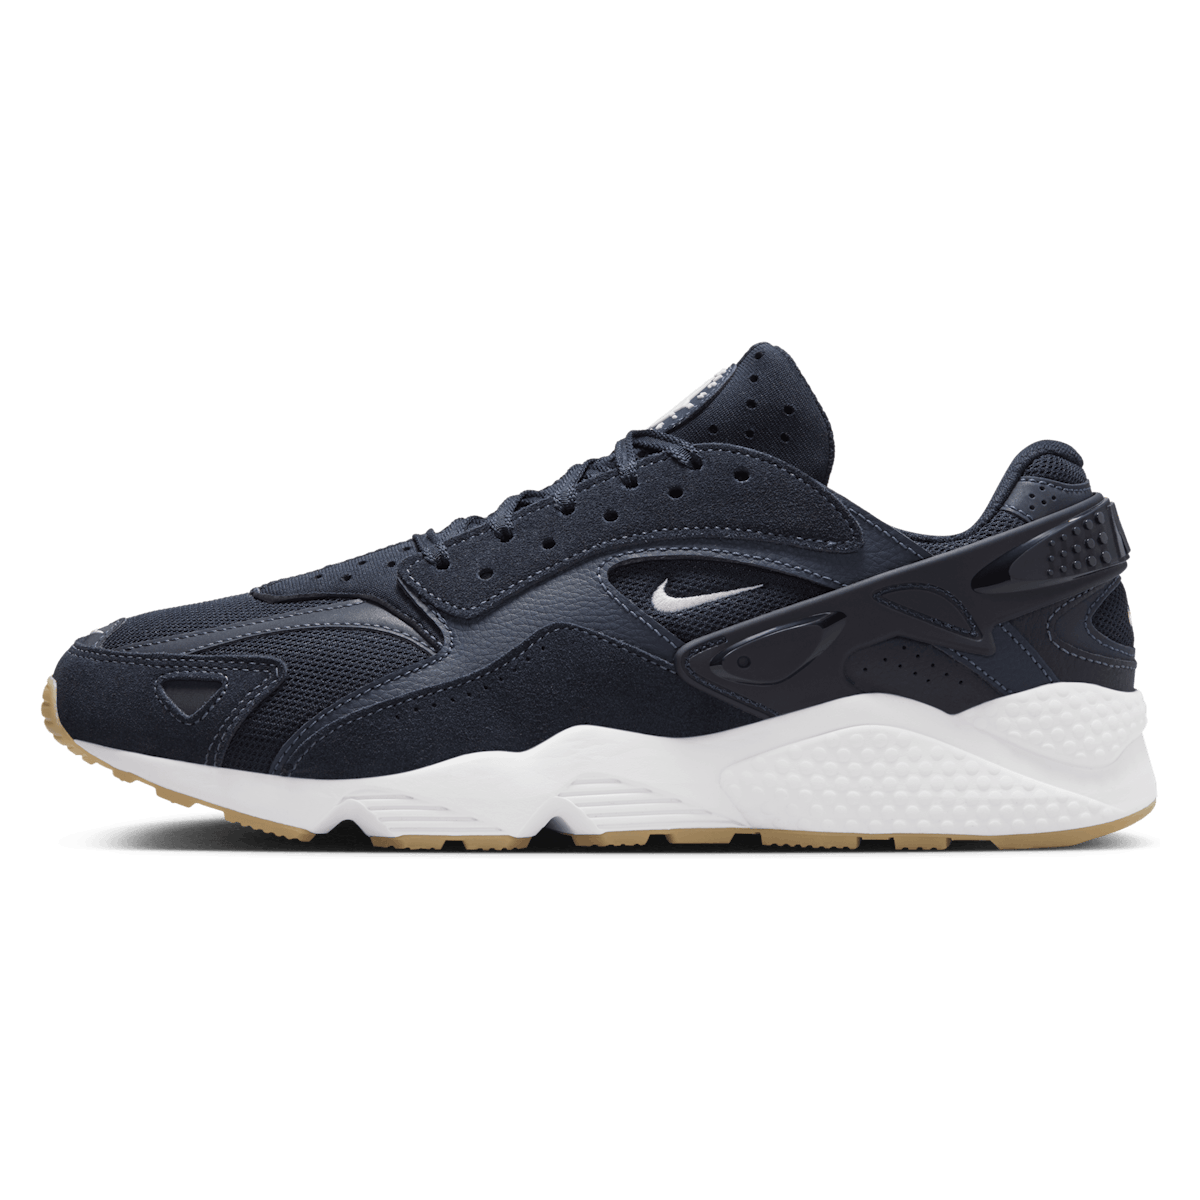 Nike Air Huarache Runner "Obsidian"